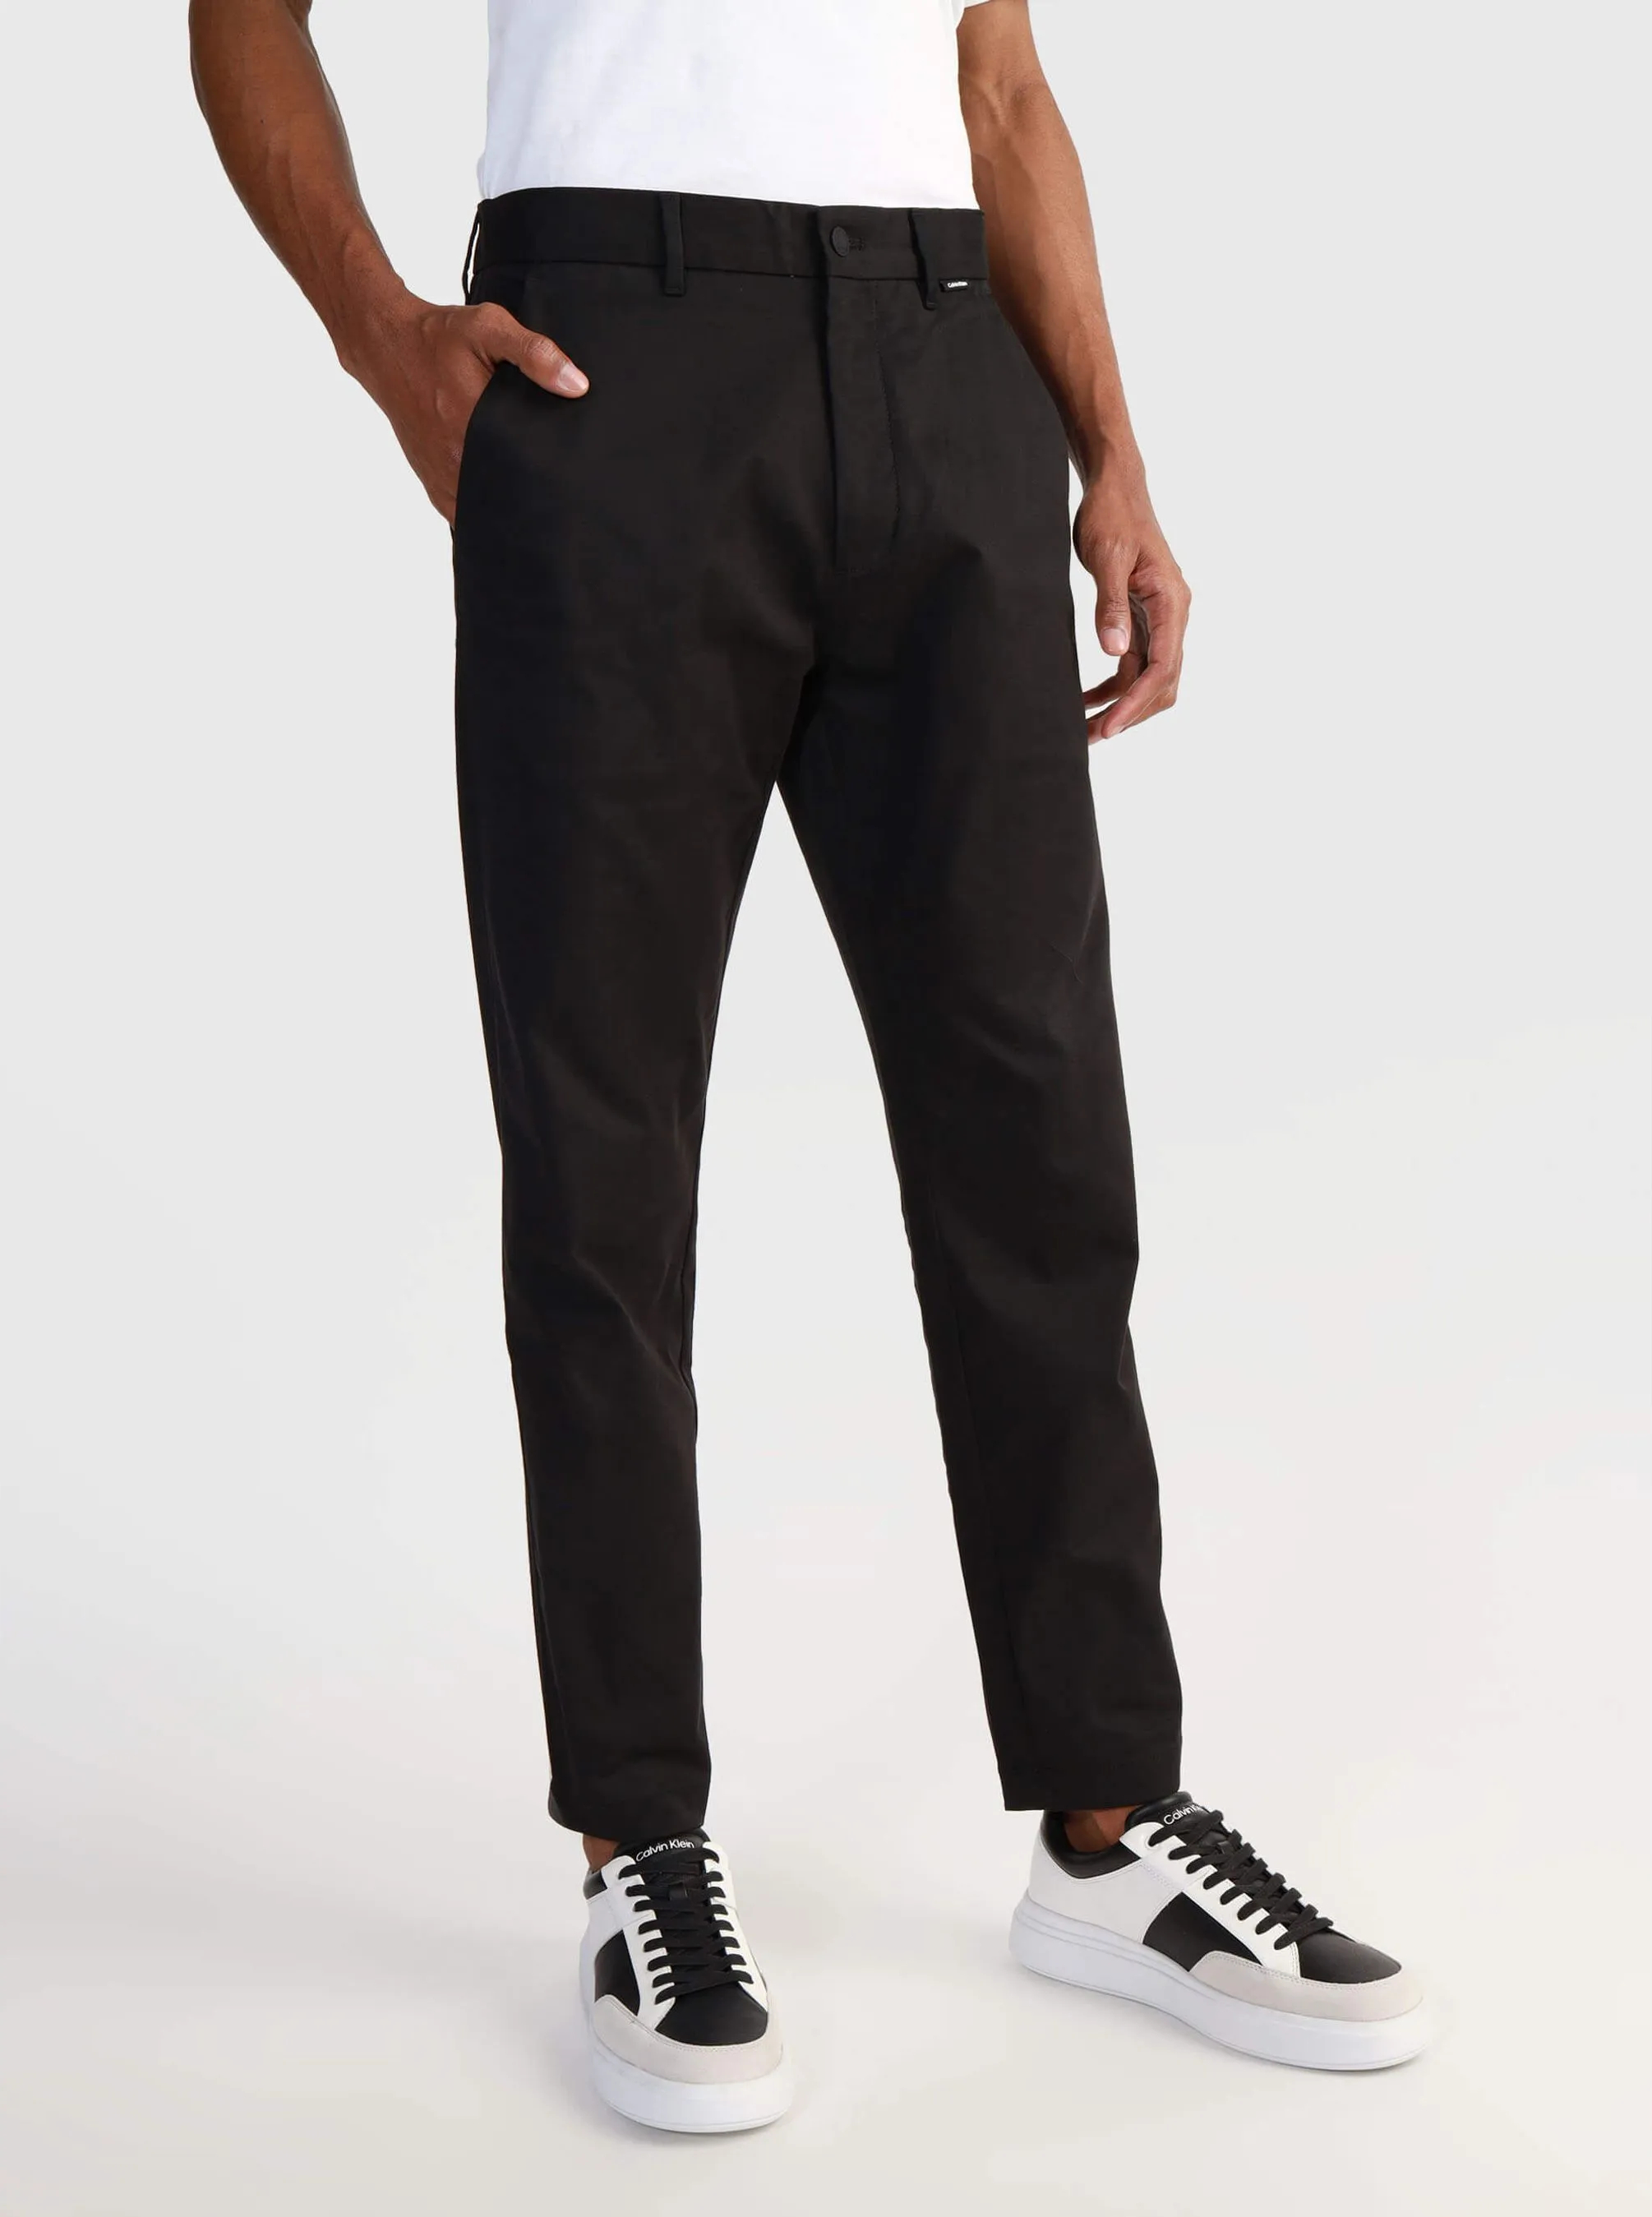 Брюки Calvin Klein для мужчин, чёрные-BEH, размер S, K10K111791